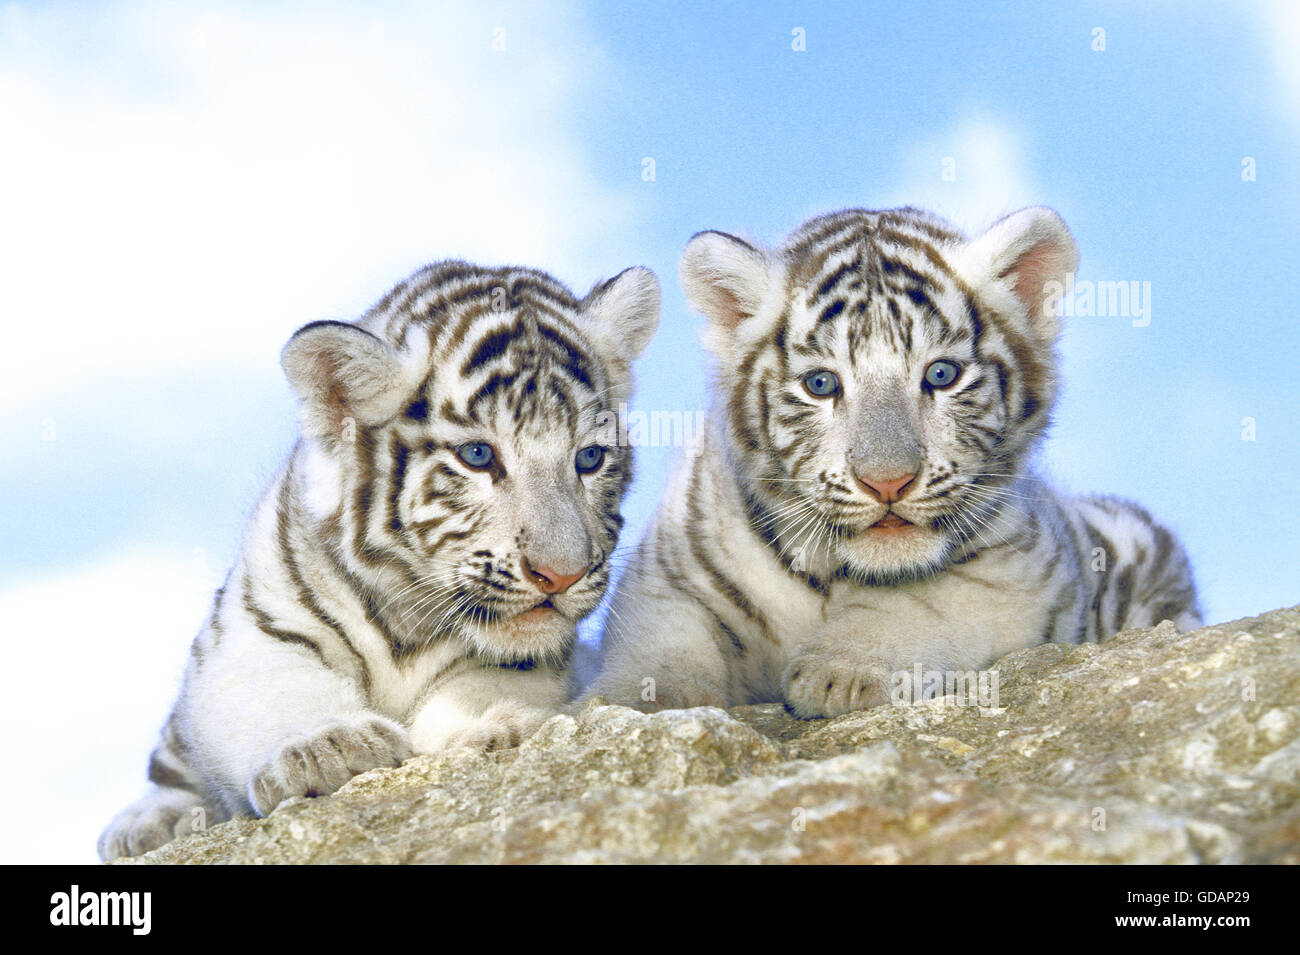 White Tiger, panthera tigris, Cub Stock Photo